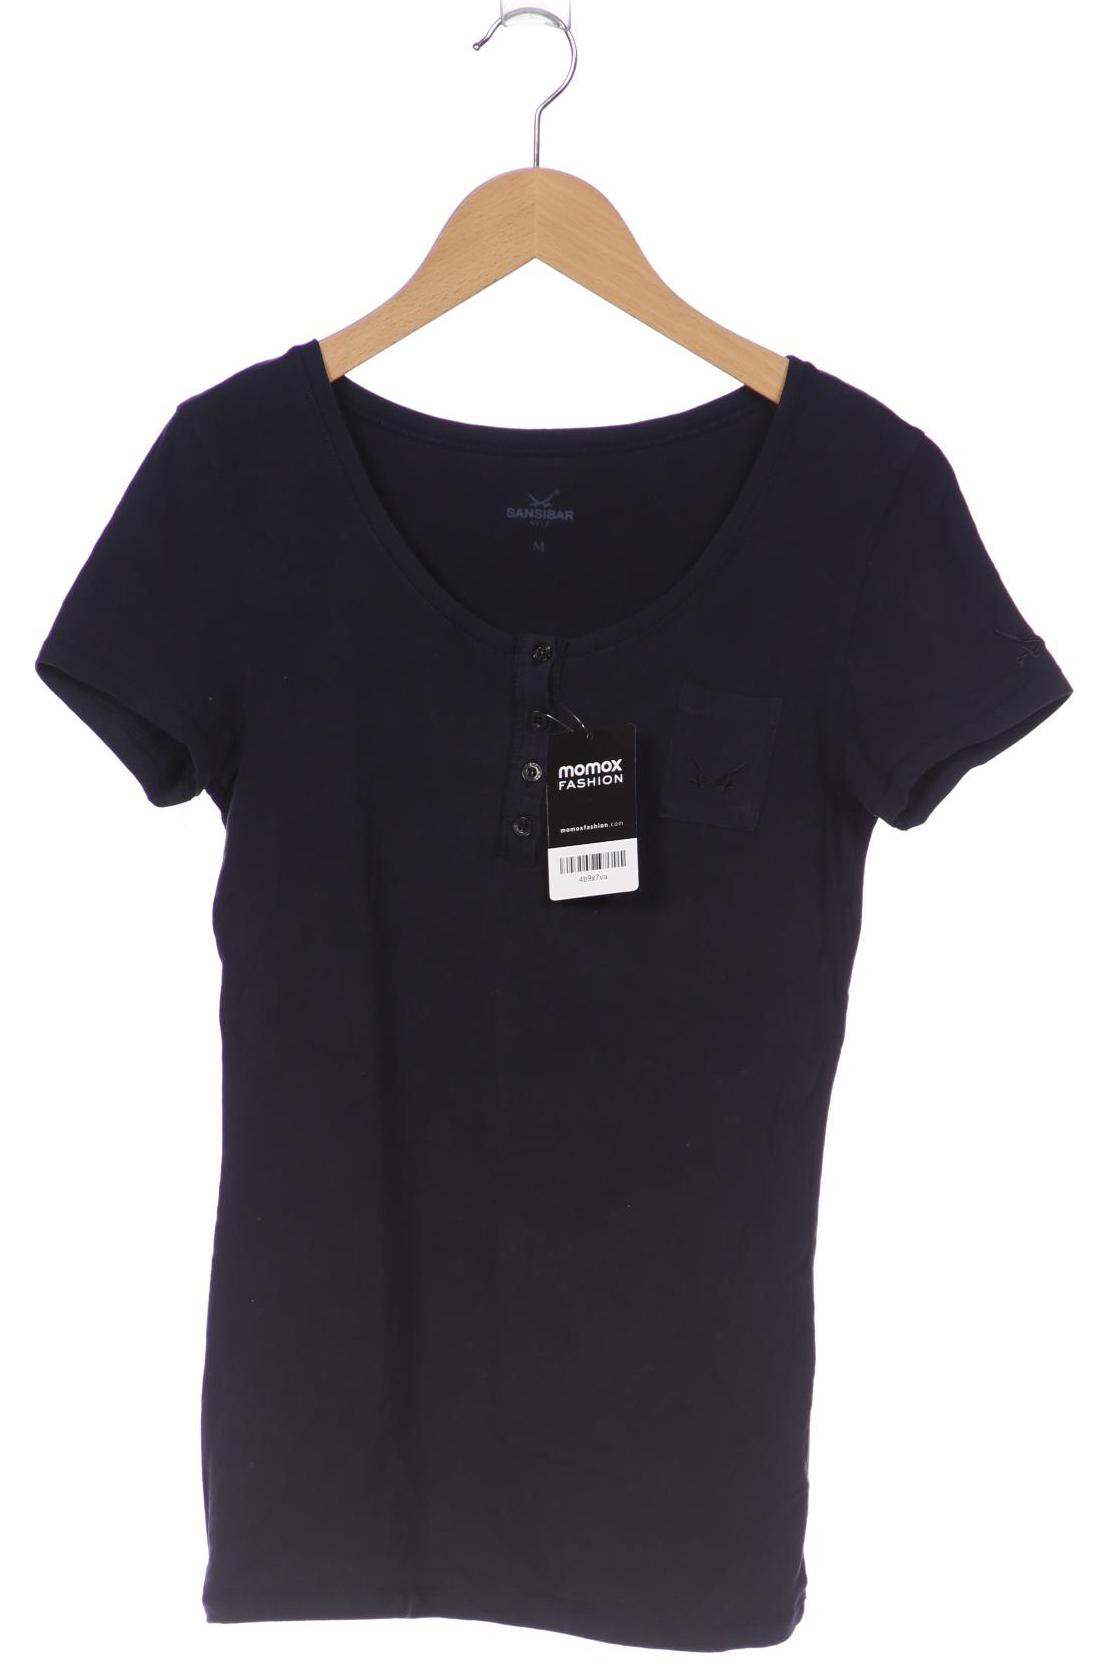 SANSIBAR Damen T-Shirt, marineblau von Sansibar